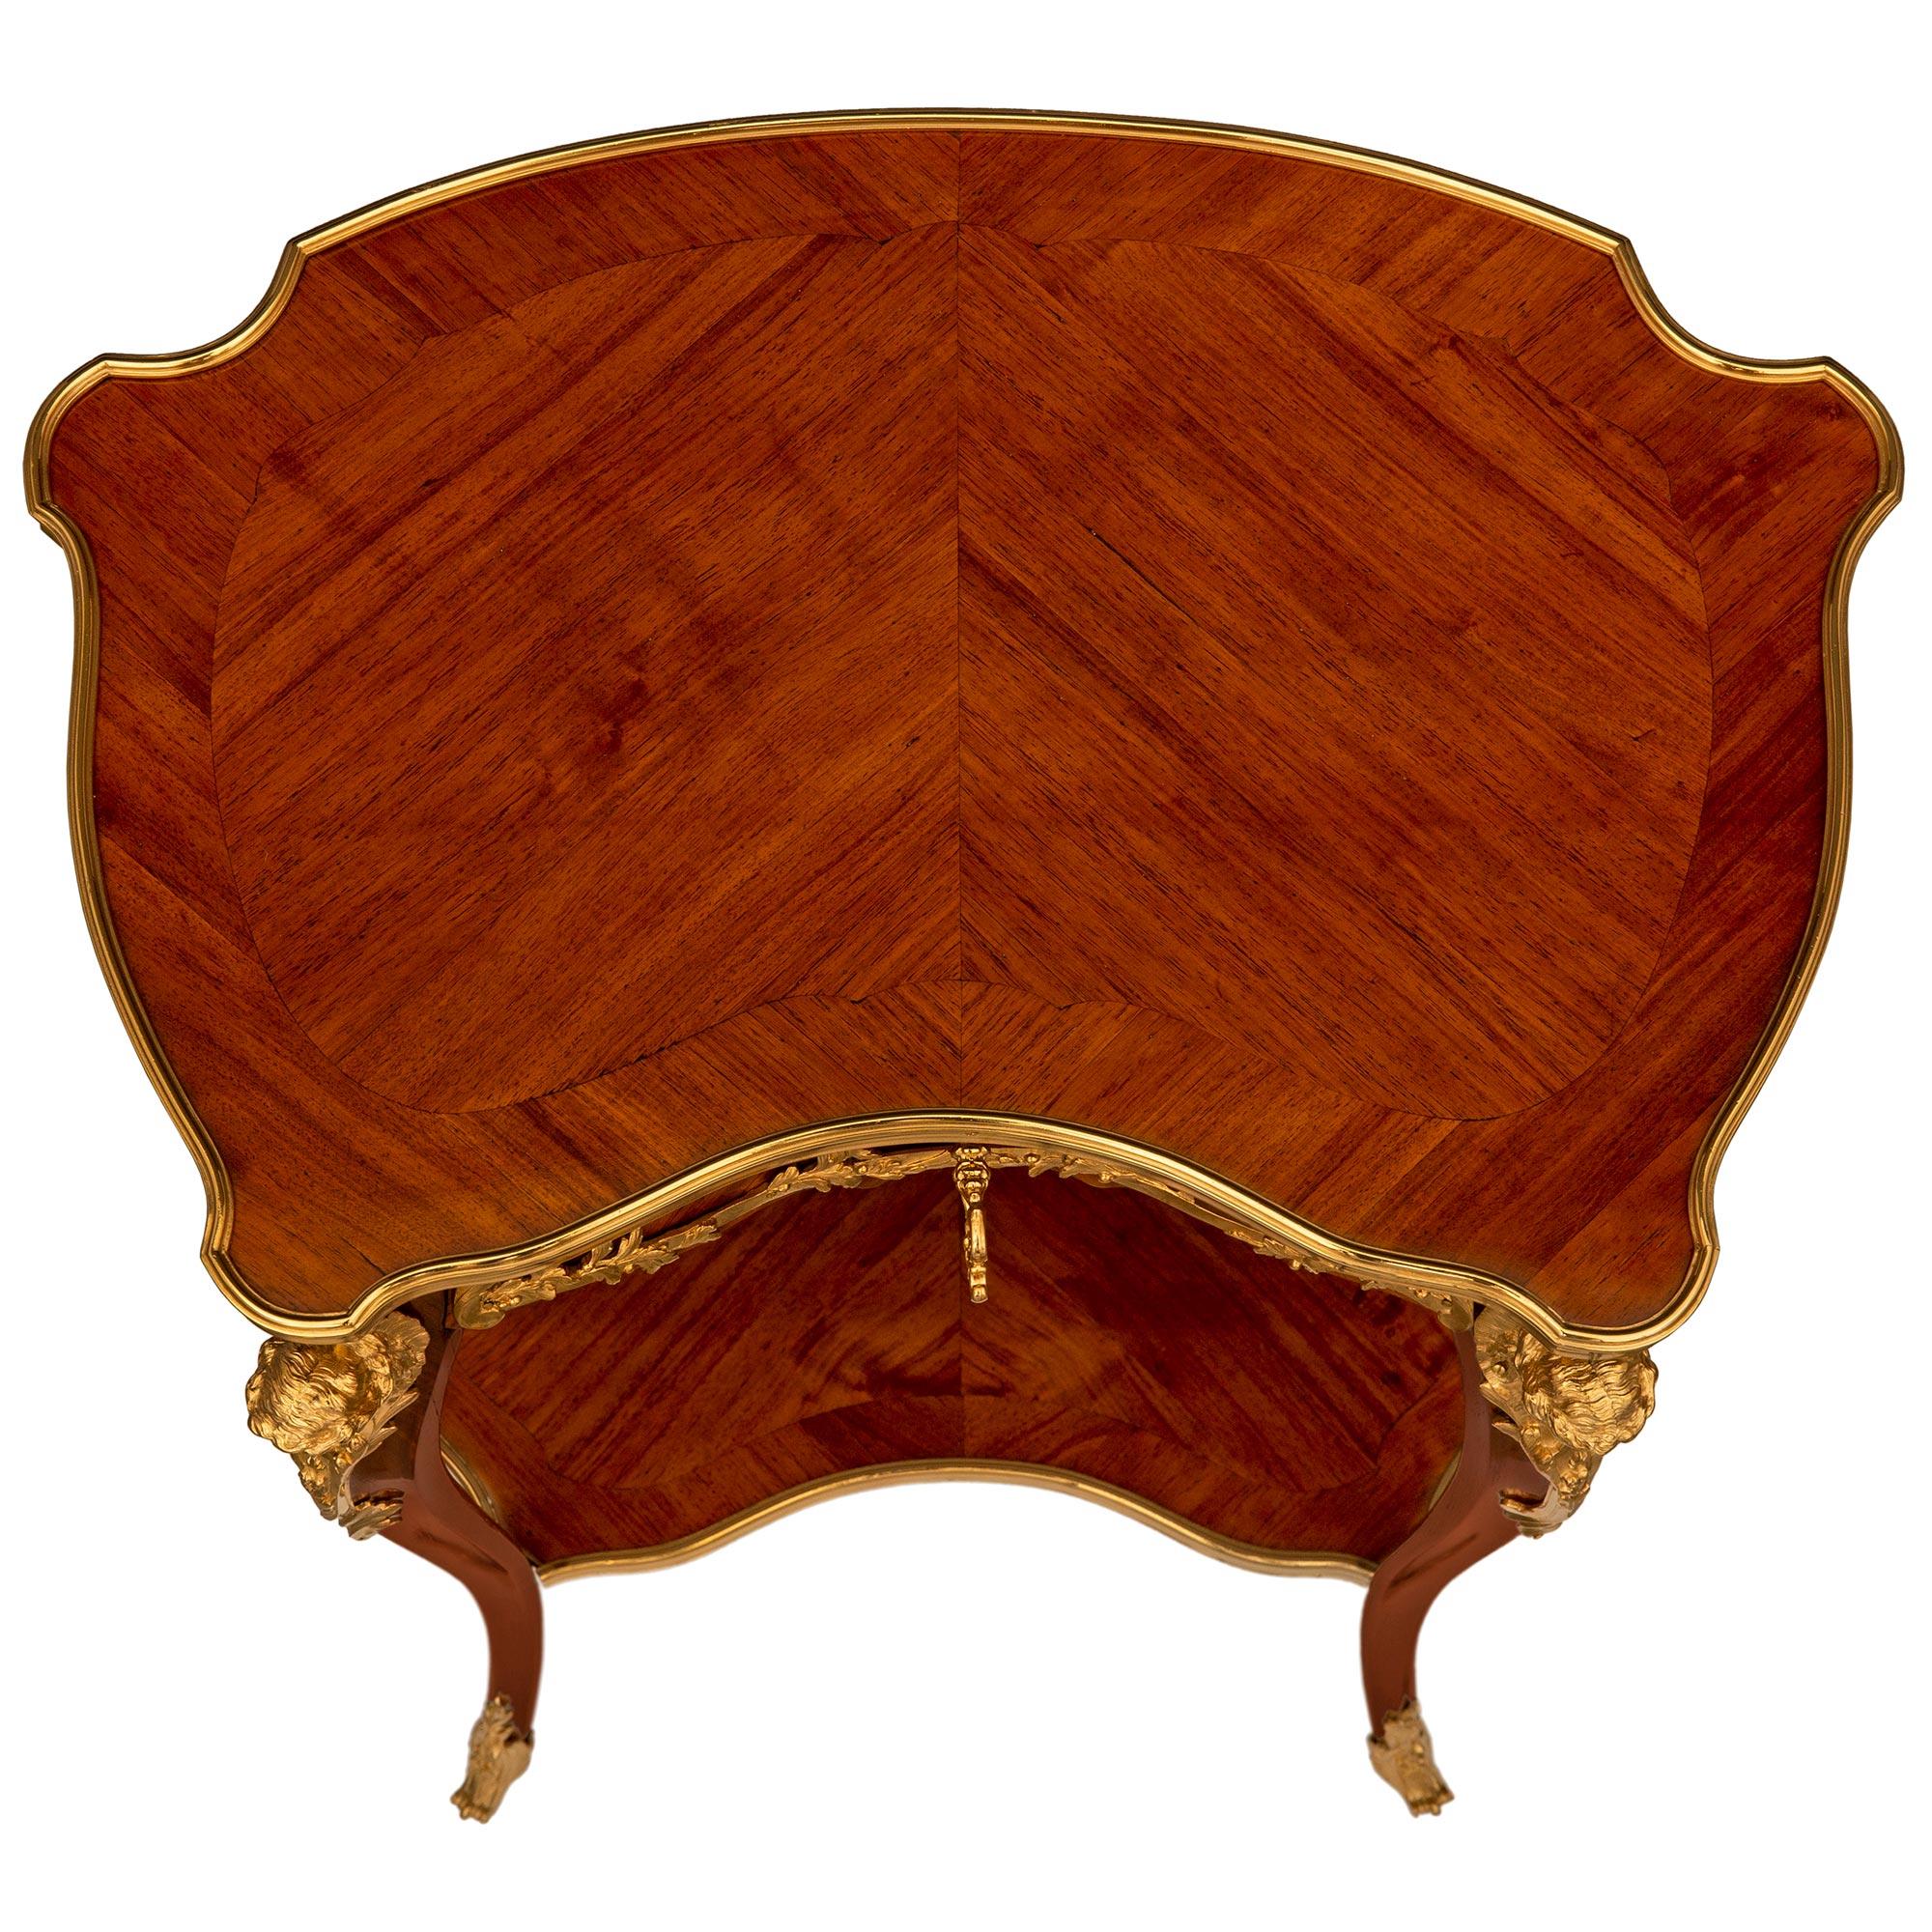 Ein wunderbar detaillierter und eleganter französischer Beistelltisch aus Tulpenholz und Ormolu aus dem 19. Jahrhundert im Stil Louis XV, der Francois Linke zugeschrieben wird. Dieser freistehende Tisch mit einer Schublade wird von schlanken